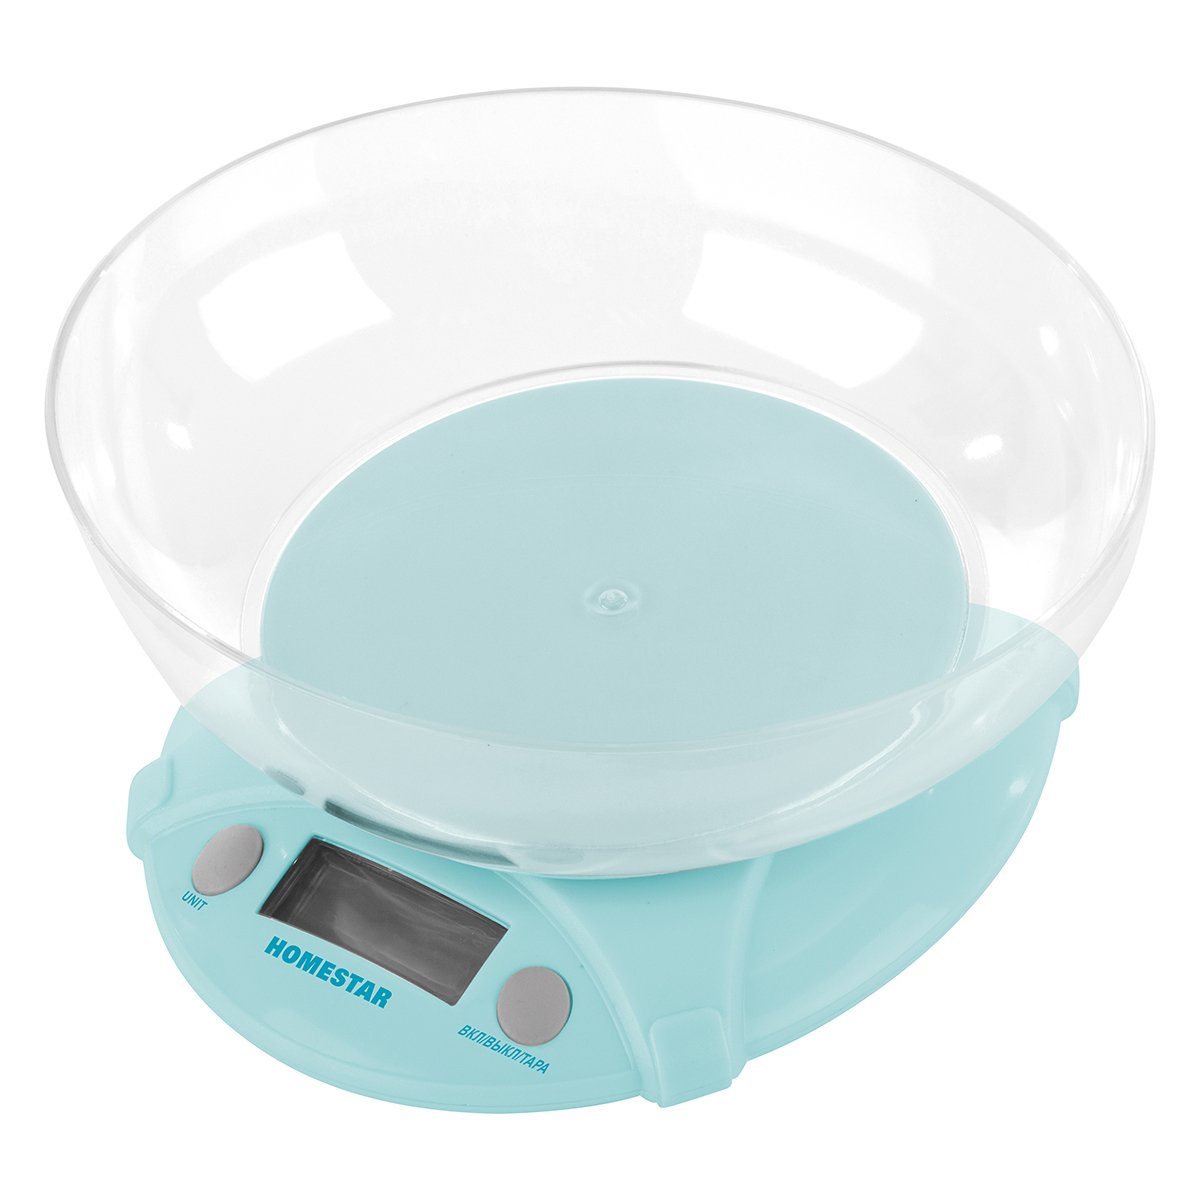 Весы кухонные электронные Homestar HS-3011 до 5 кг голубые чаша круглая - фото 1